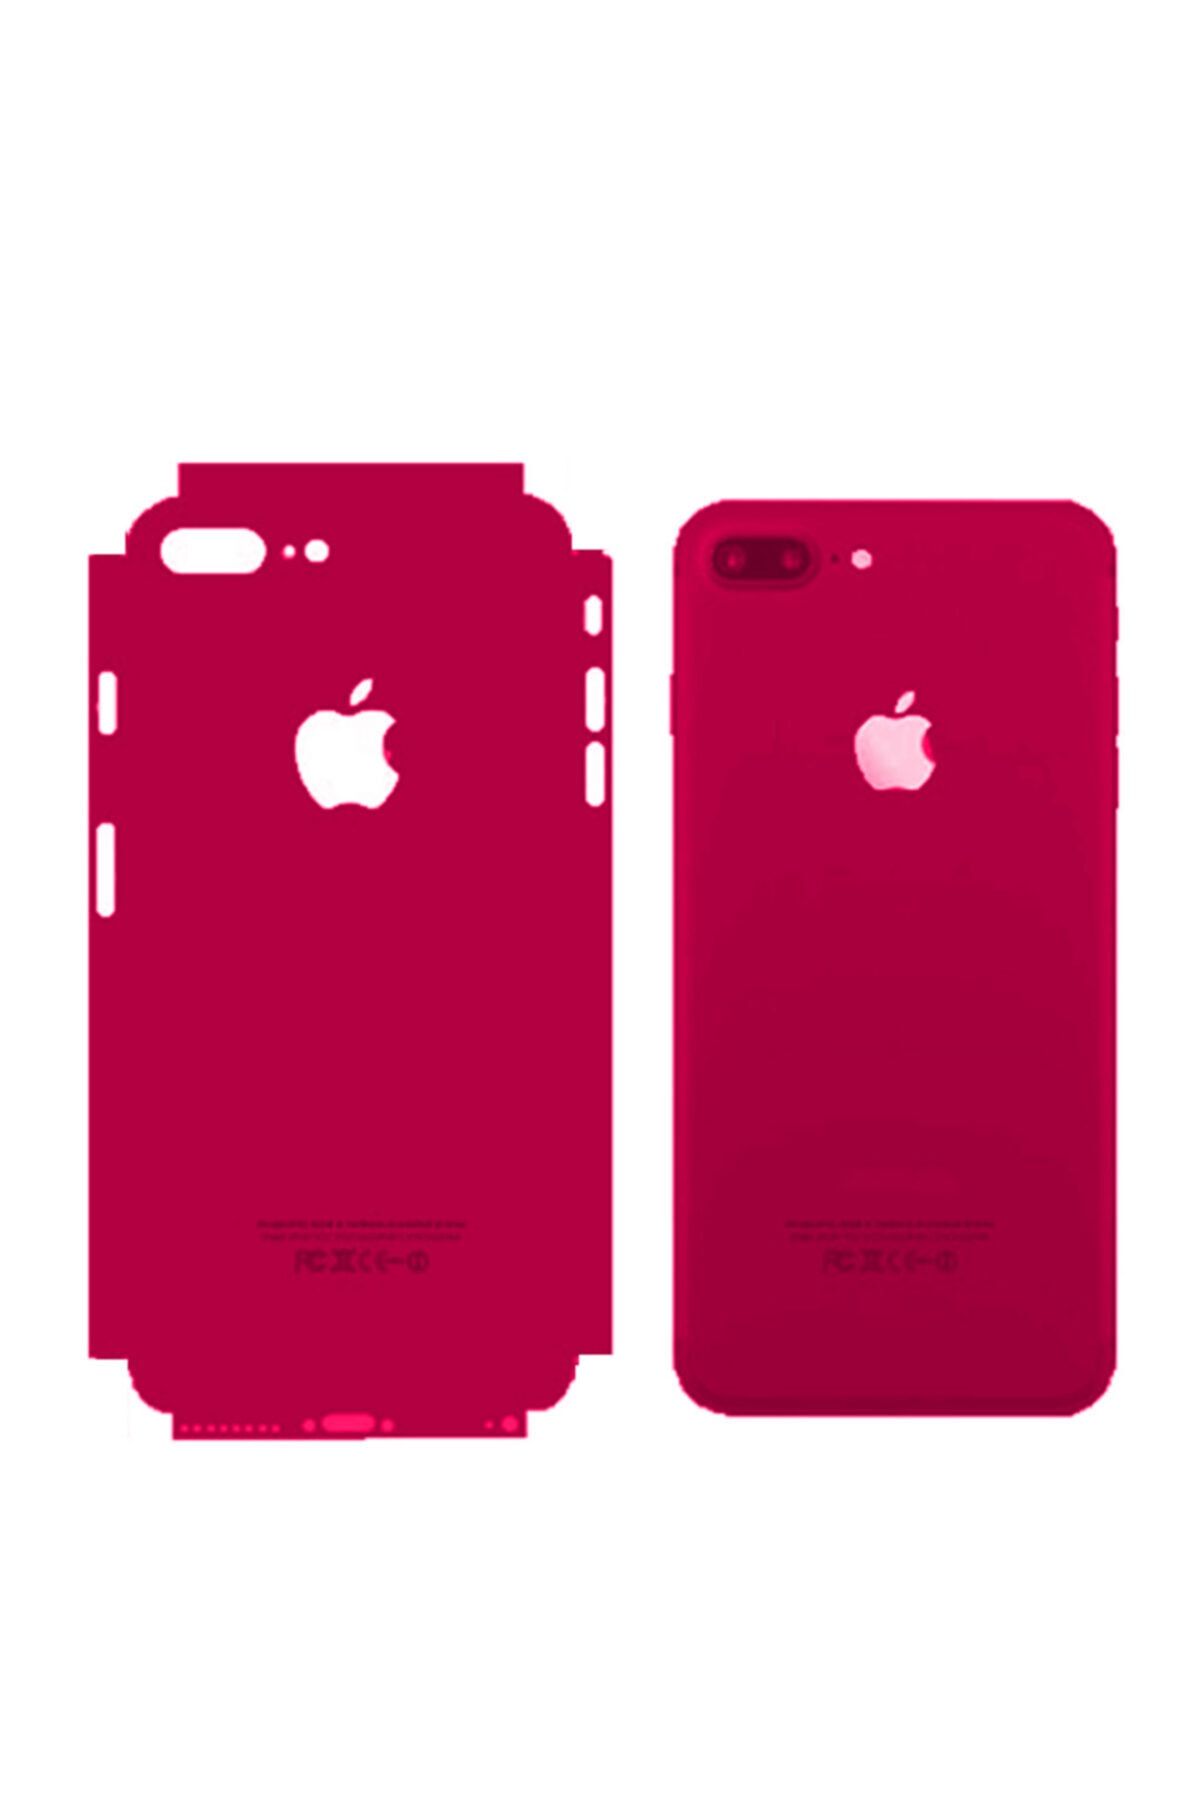 BCA Apple Iphone 6 Renkli Arka Ve Yan Koruma Jelatin Sticker Kaplama Film